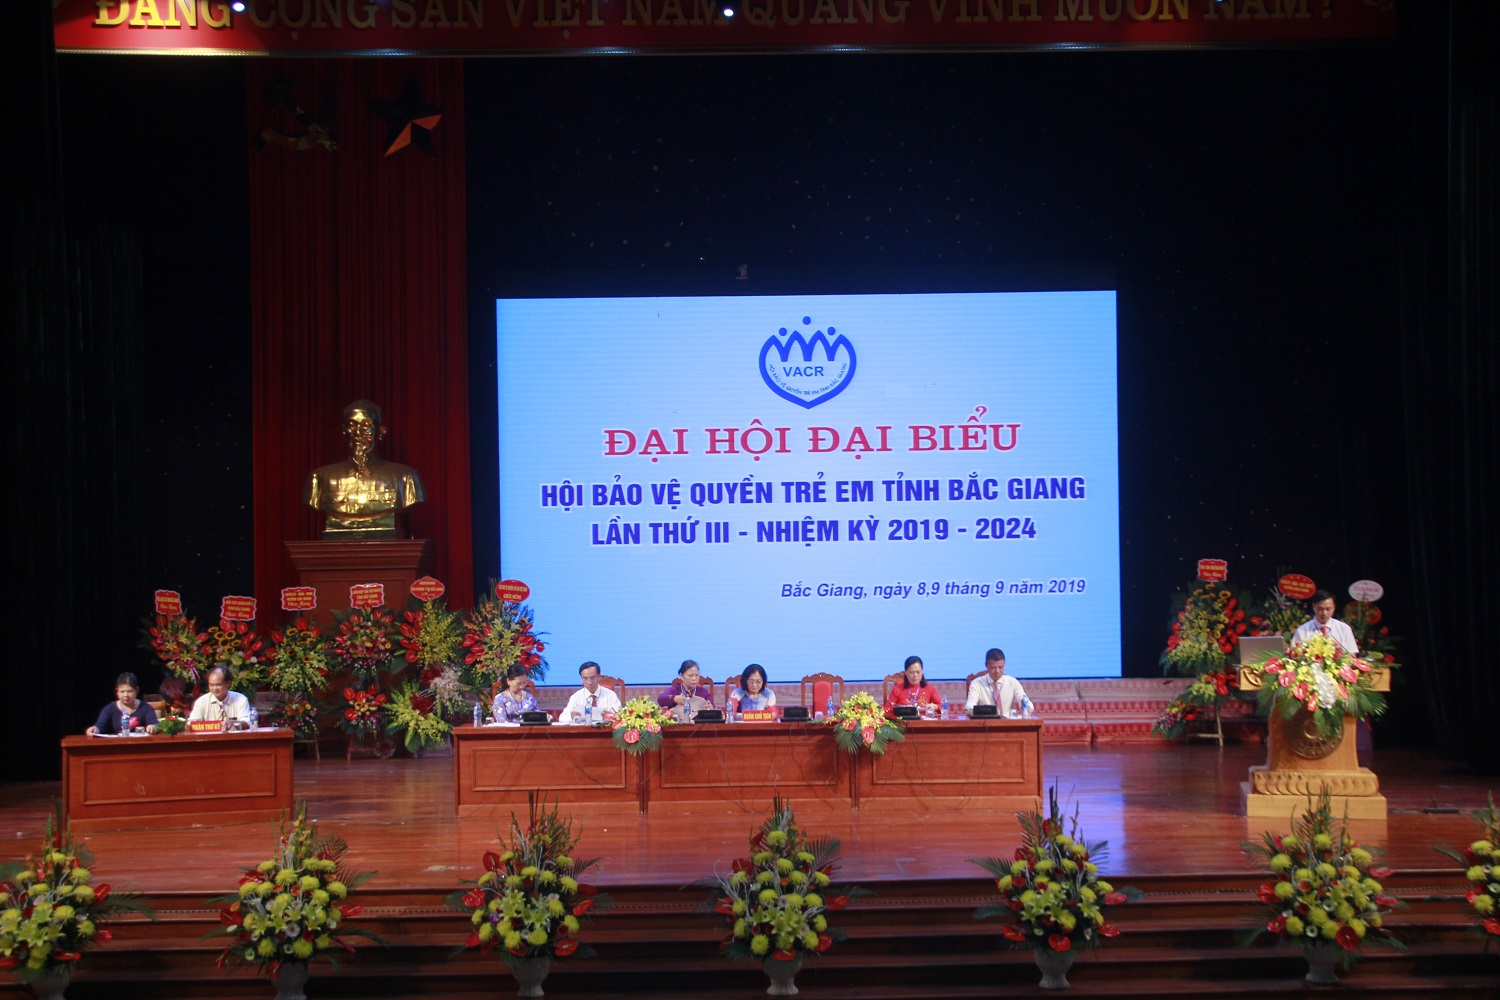 Đoàn Chủ tịch Đại hội đại biểu Hội Bảo vệ quyền trẻ em tỉnh Bắc Giang lần thứ III